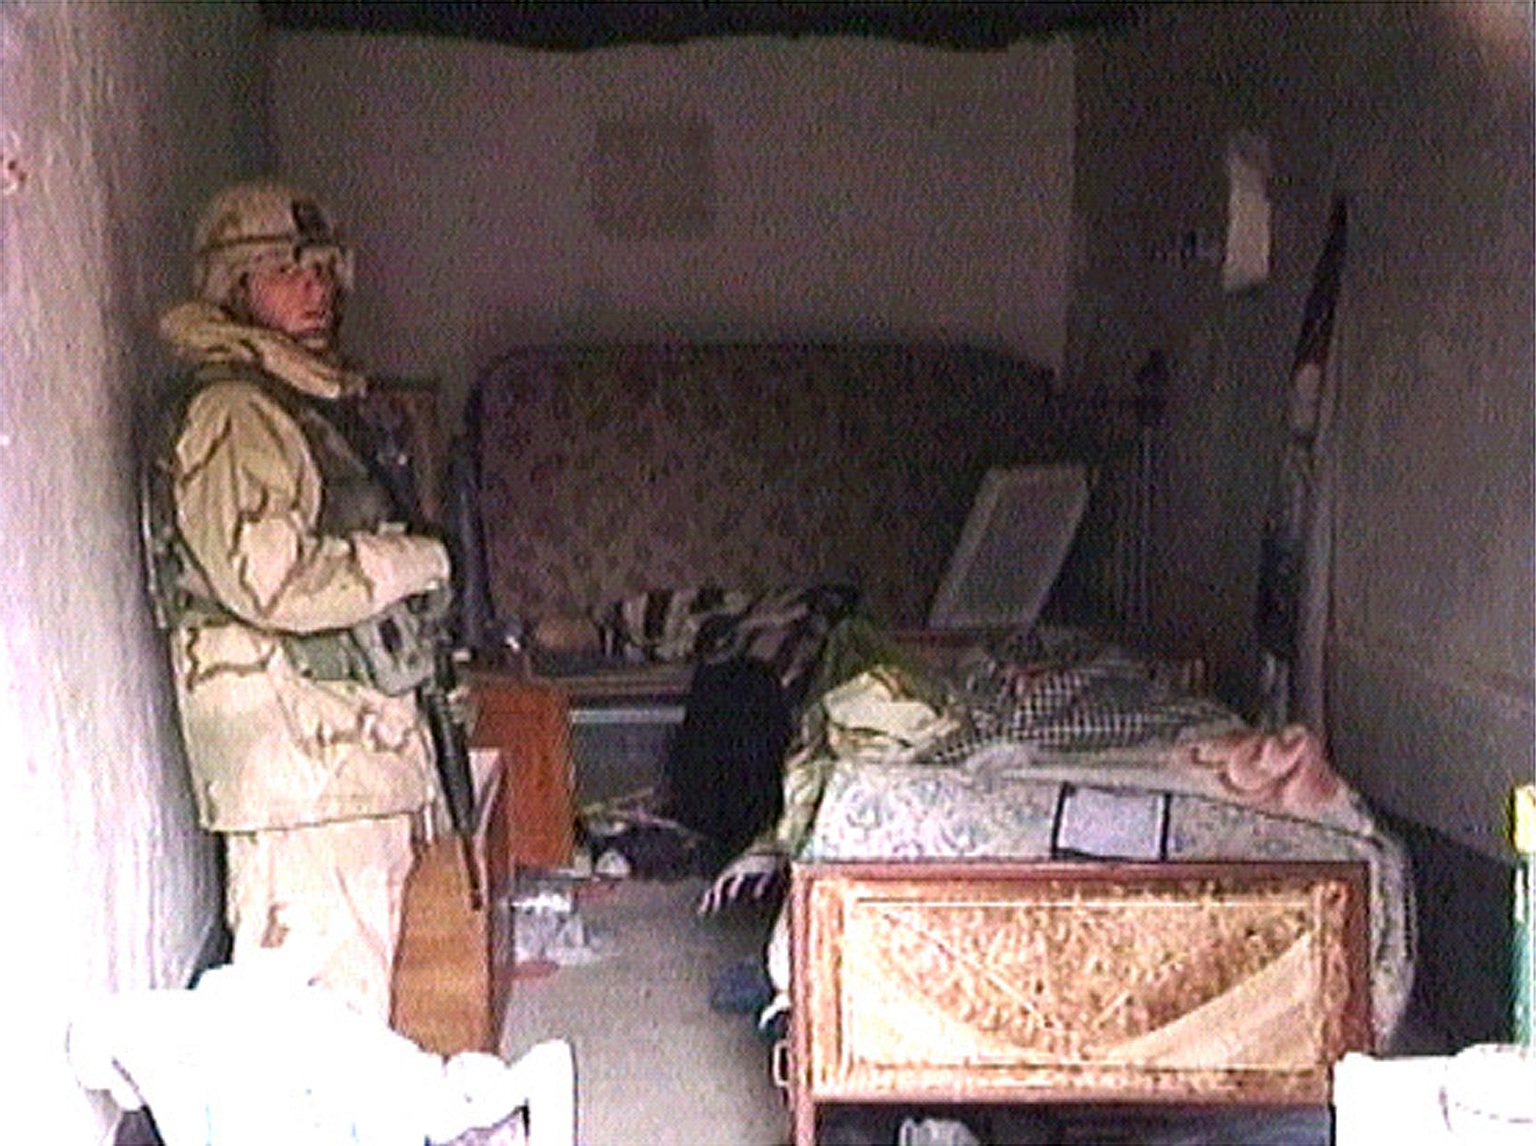 13 декабря 2003 года Саддам Хусейн был обнаружен и арестован в подвале деревенского дома близ селения Ад-Даур, находящегося в 15 км от Тикрита